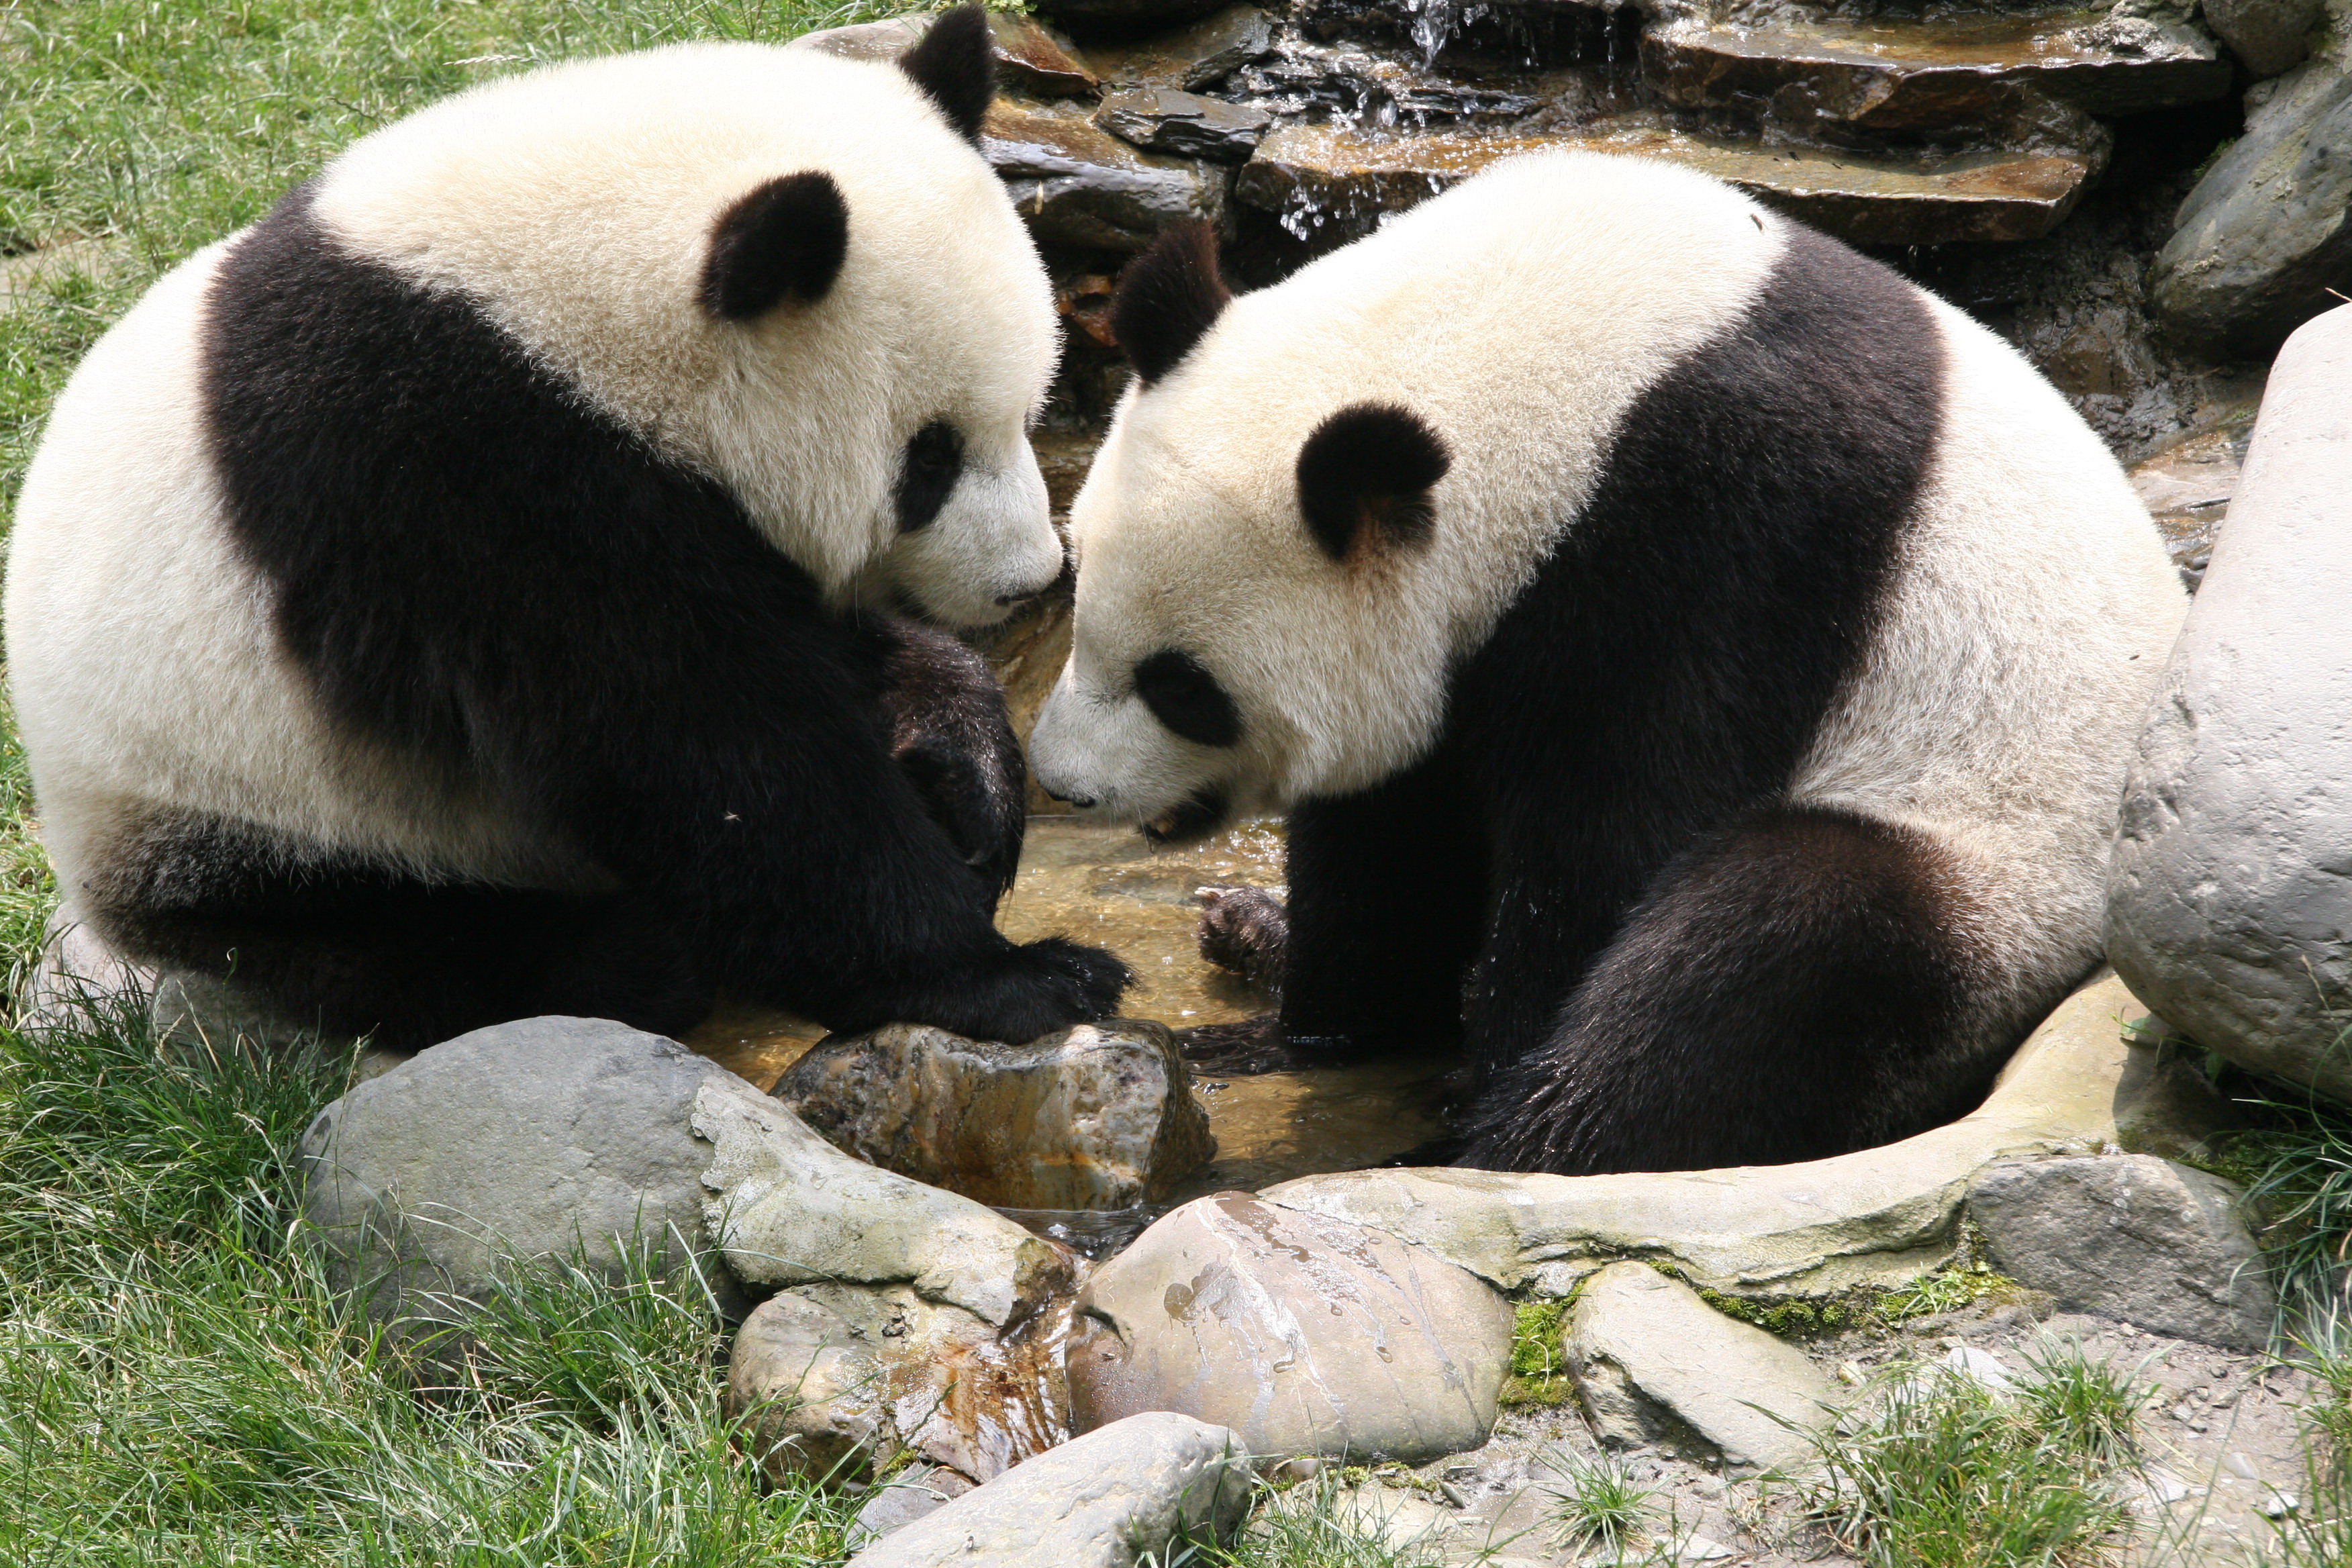 明星和熊猫合影:蔡依林开怀大笑,只有他"封了"熊猫的奇经八脉